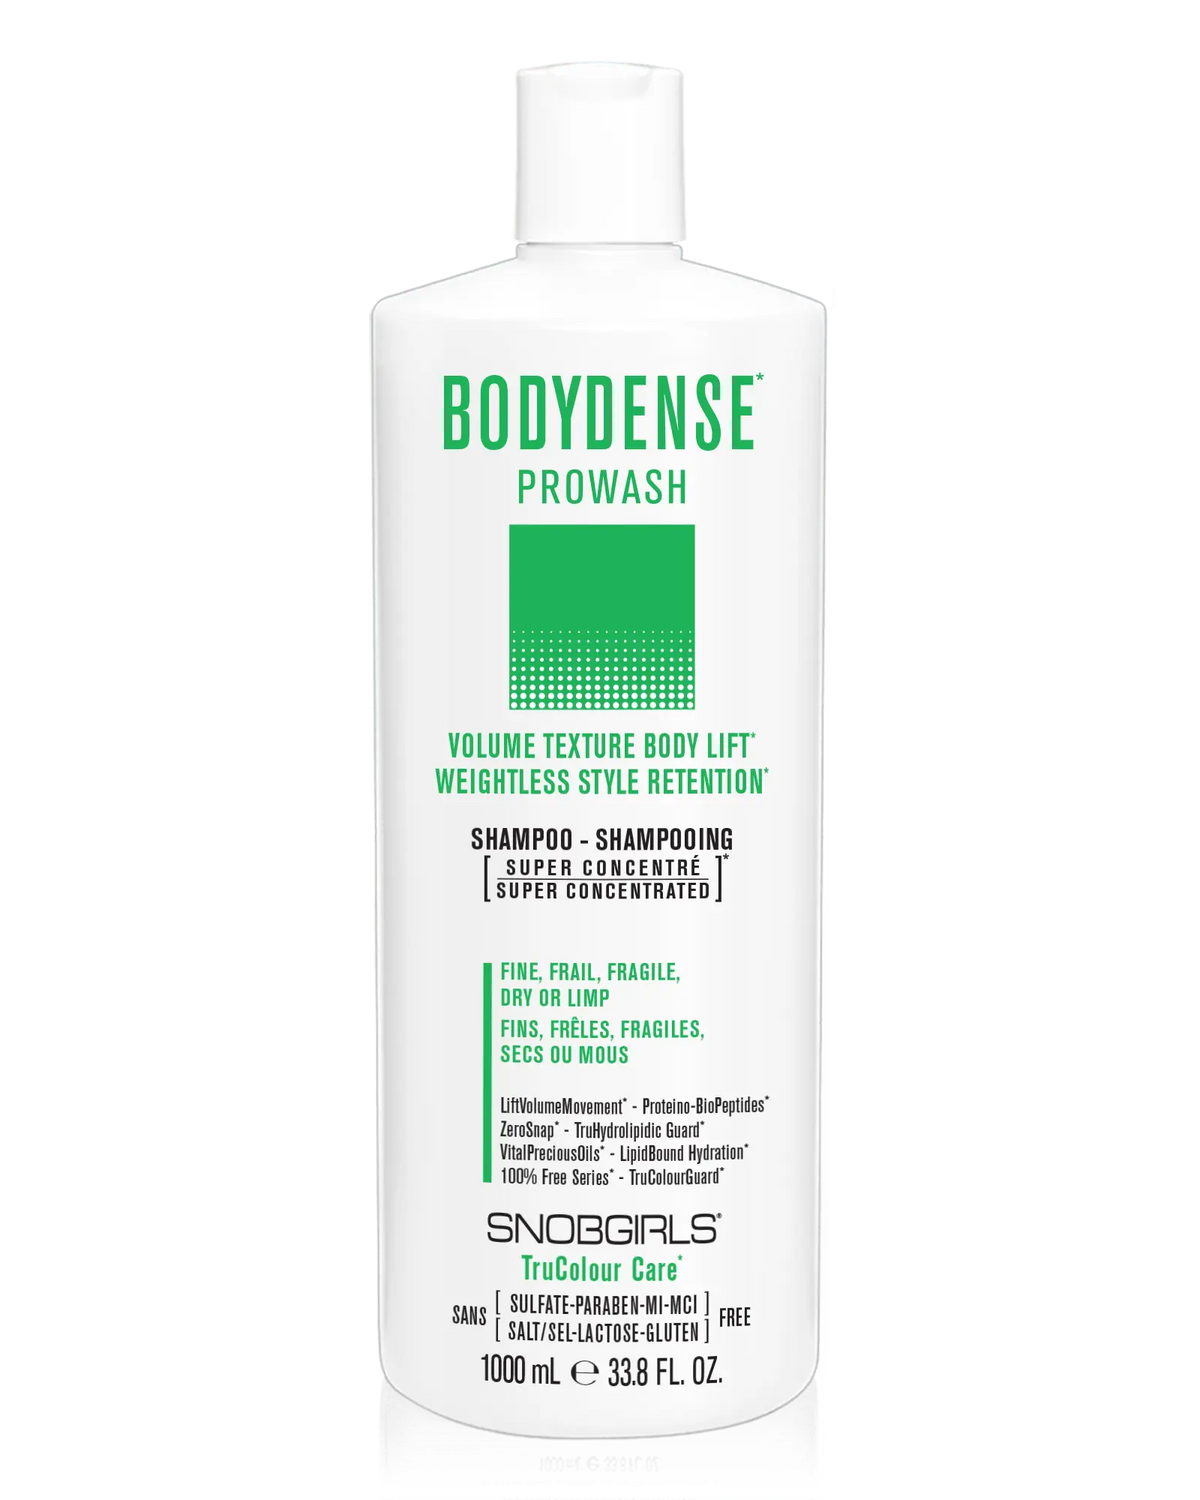 BODYDENSE Prowash (shampoo) 33.8 FL. OZ. - SNOBGIRLS.com